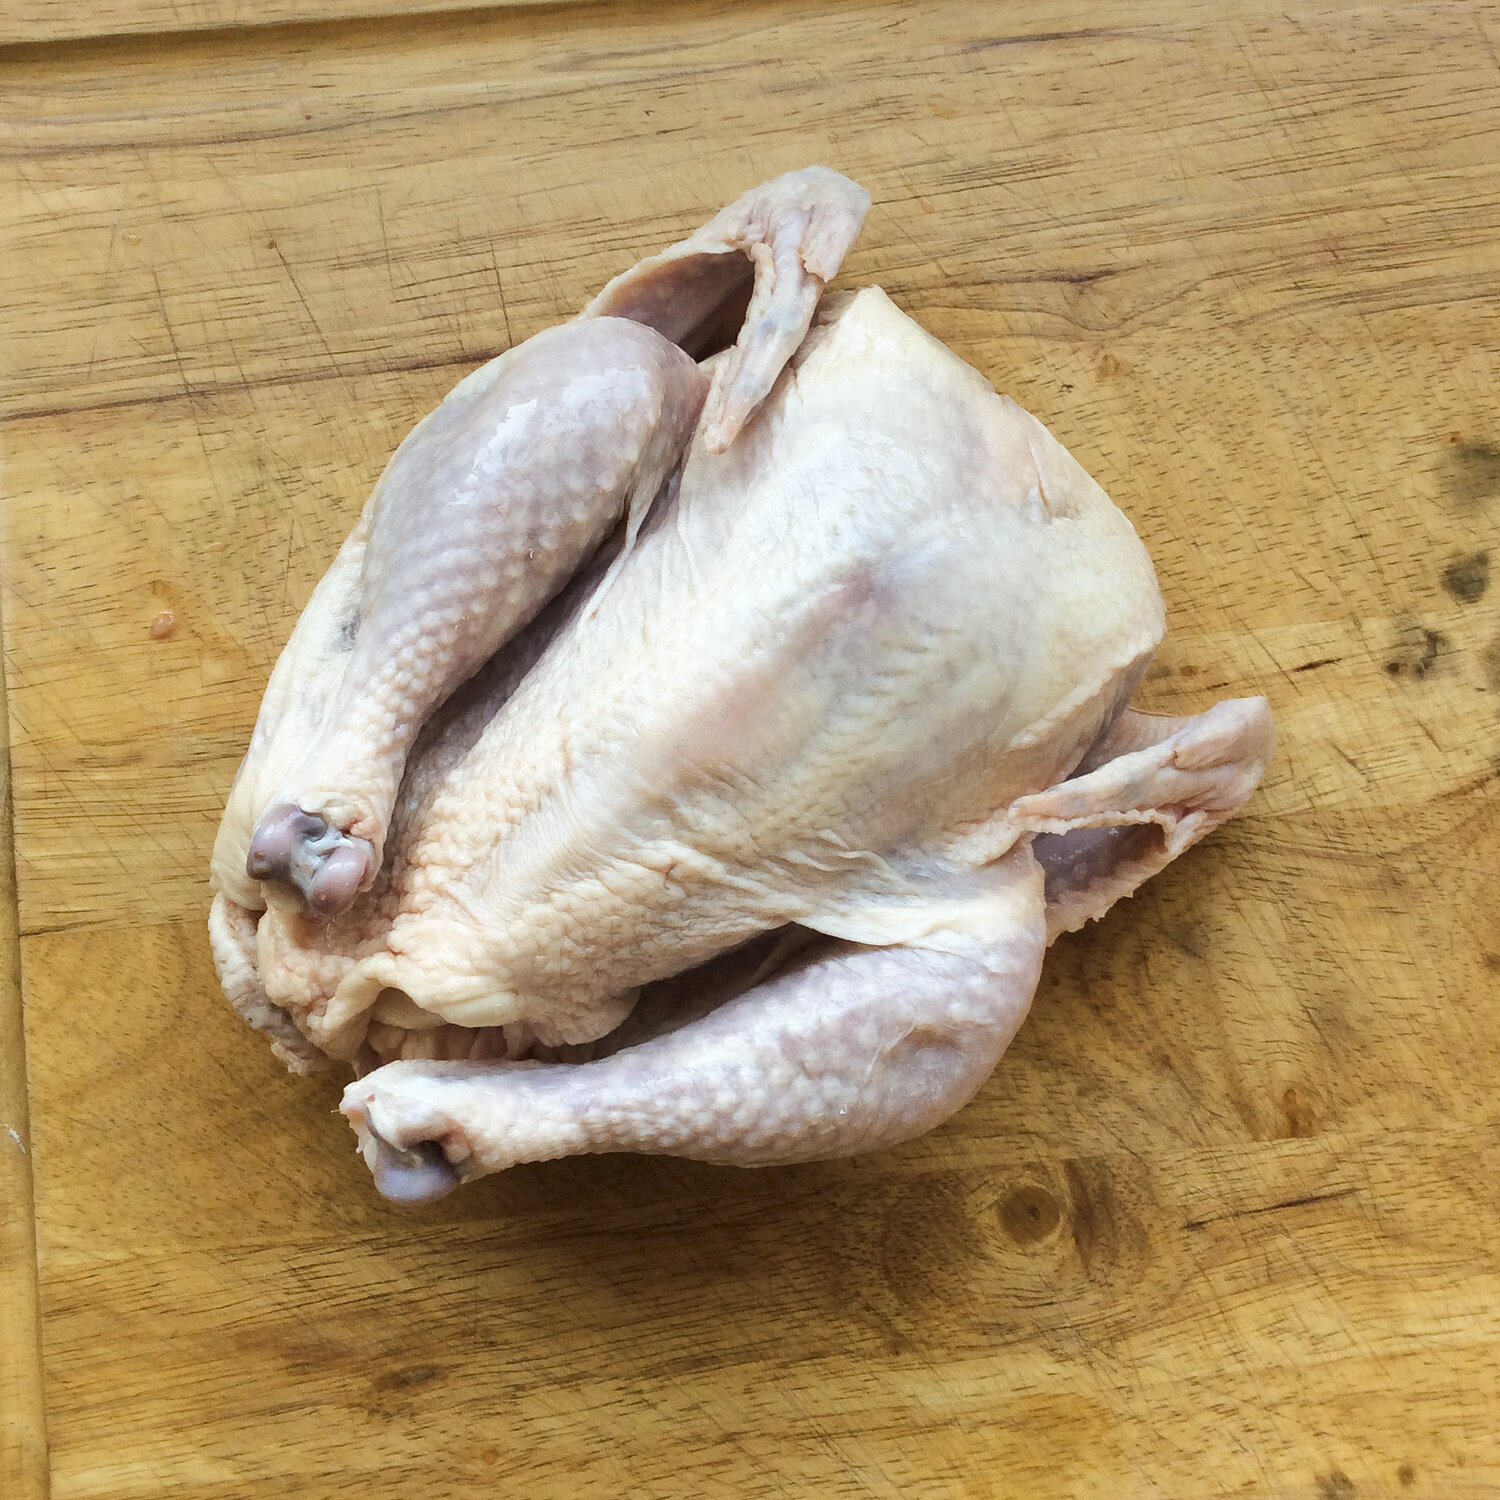 Chicken - Stewing Hen - Certified Organic - Pasture Raised